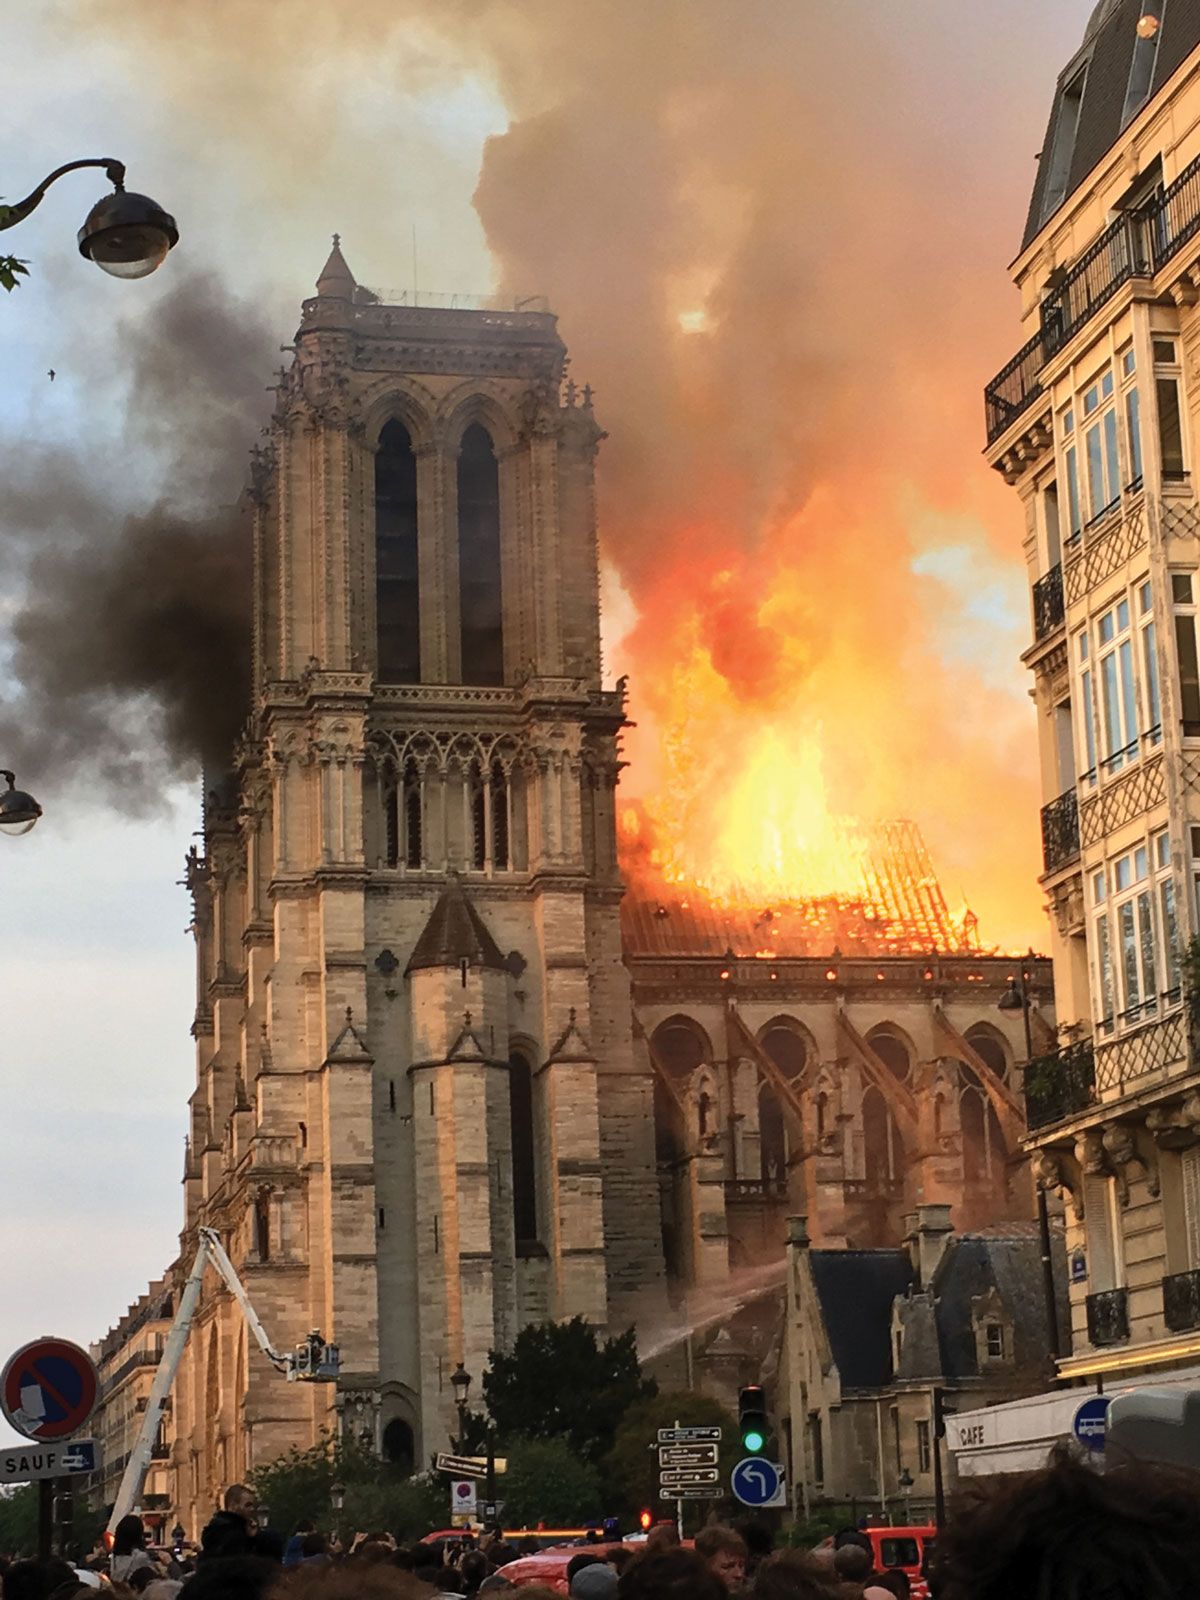 Notre Dame de Paris was ravaged by fire on 15 April 